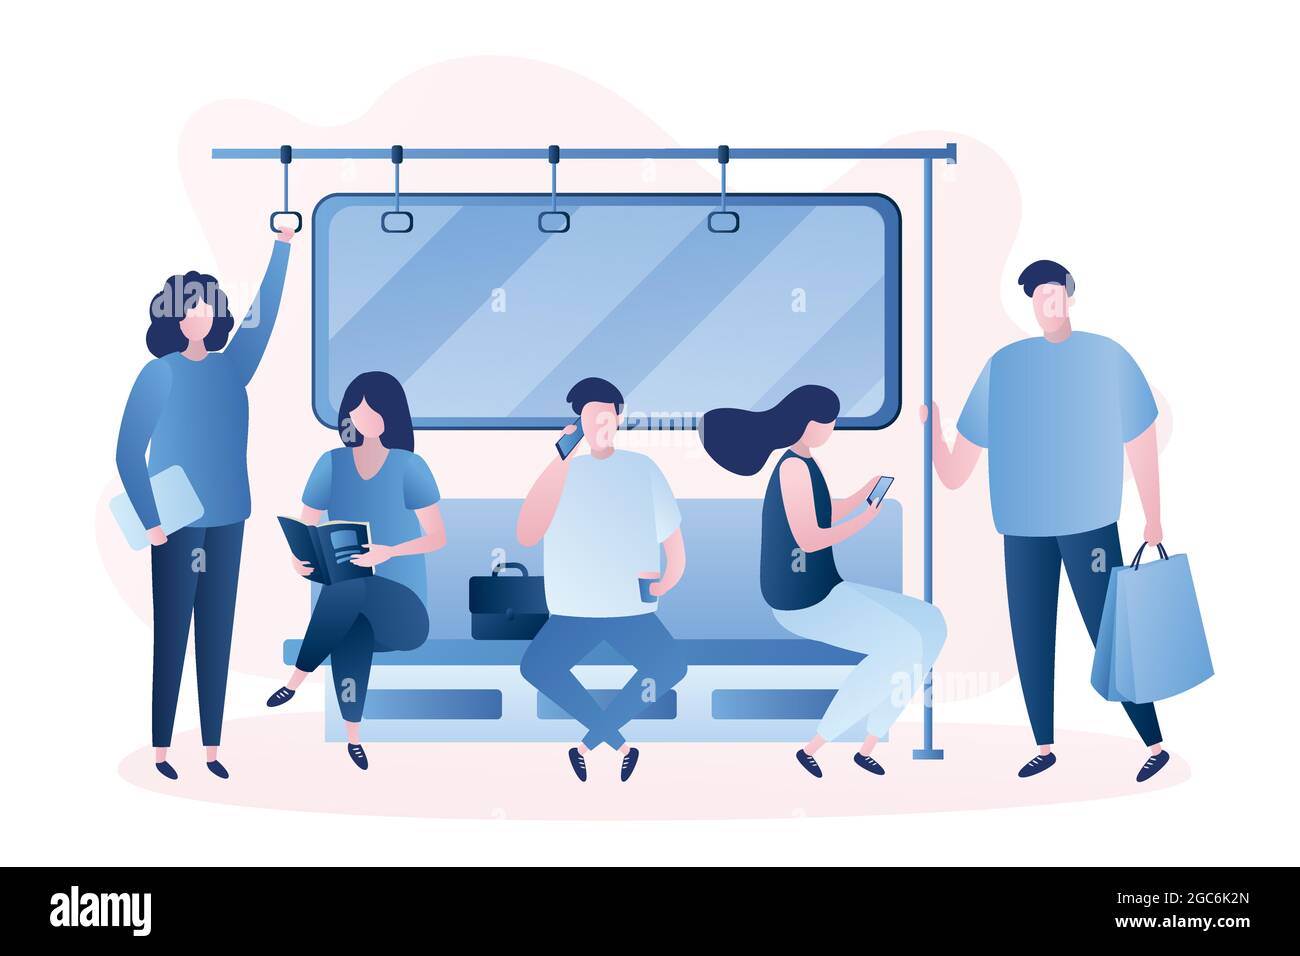 Personnes dans le métro, hommes et femmes personnages, hommes assis et debout dans le métro, scène dans le transport, style branché illustration vectorielle Illustration de Vecteur